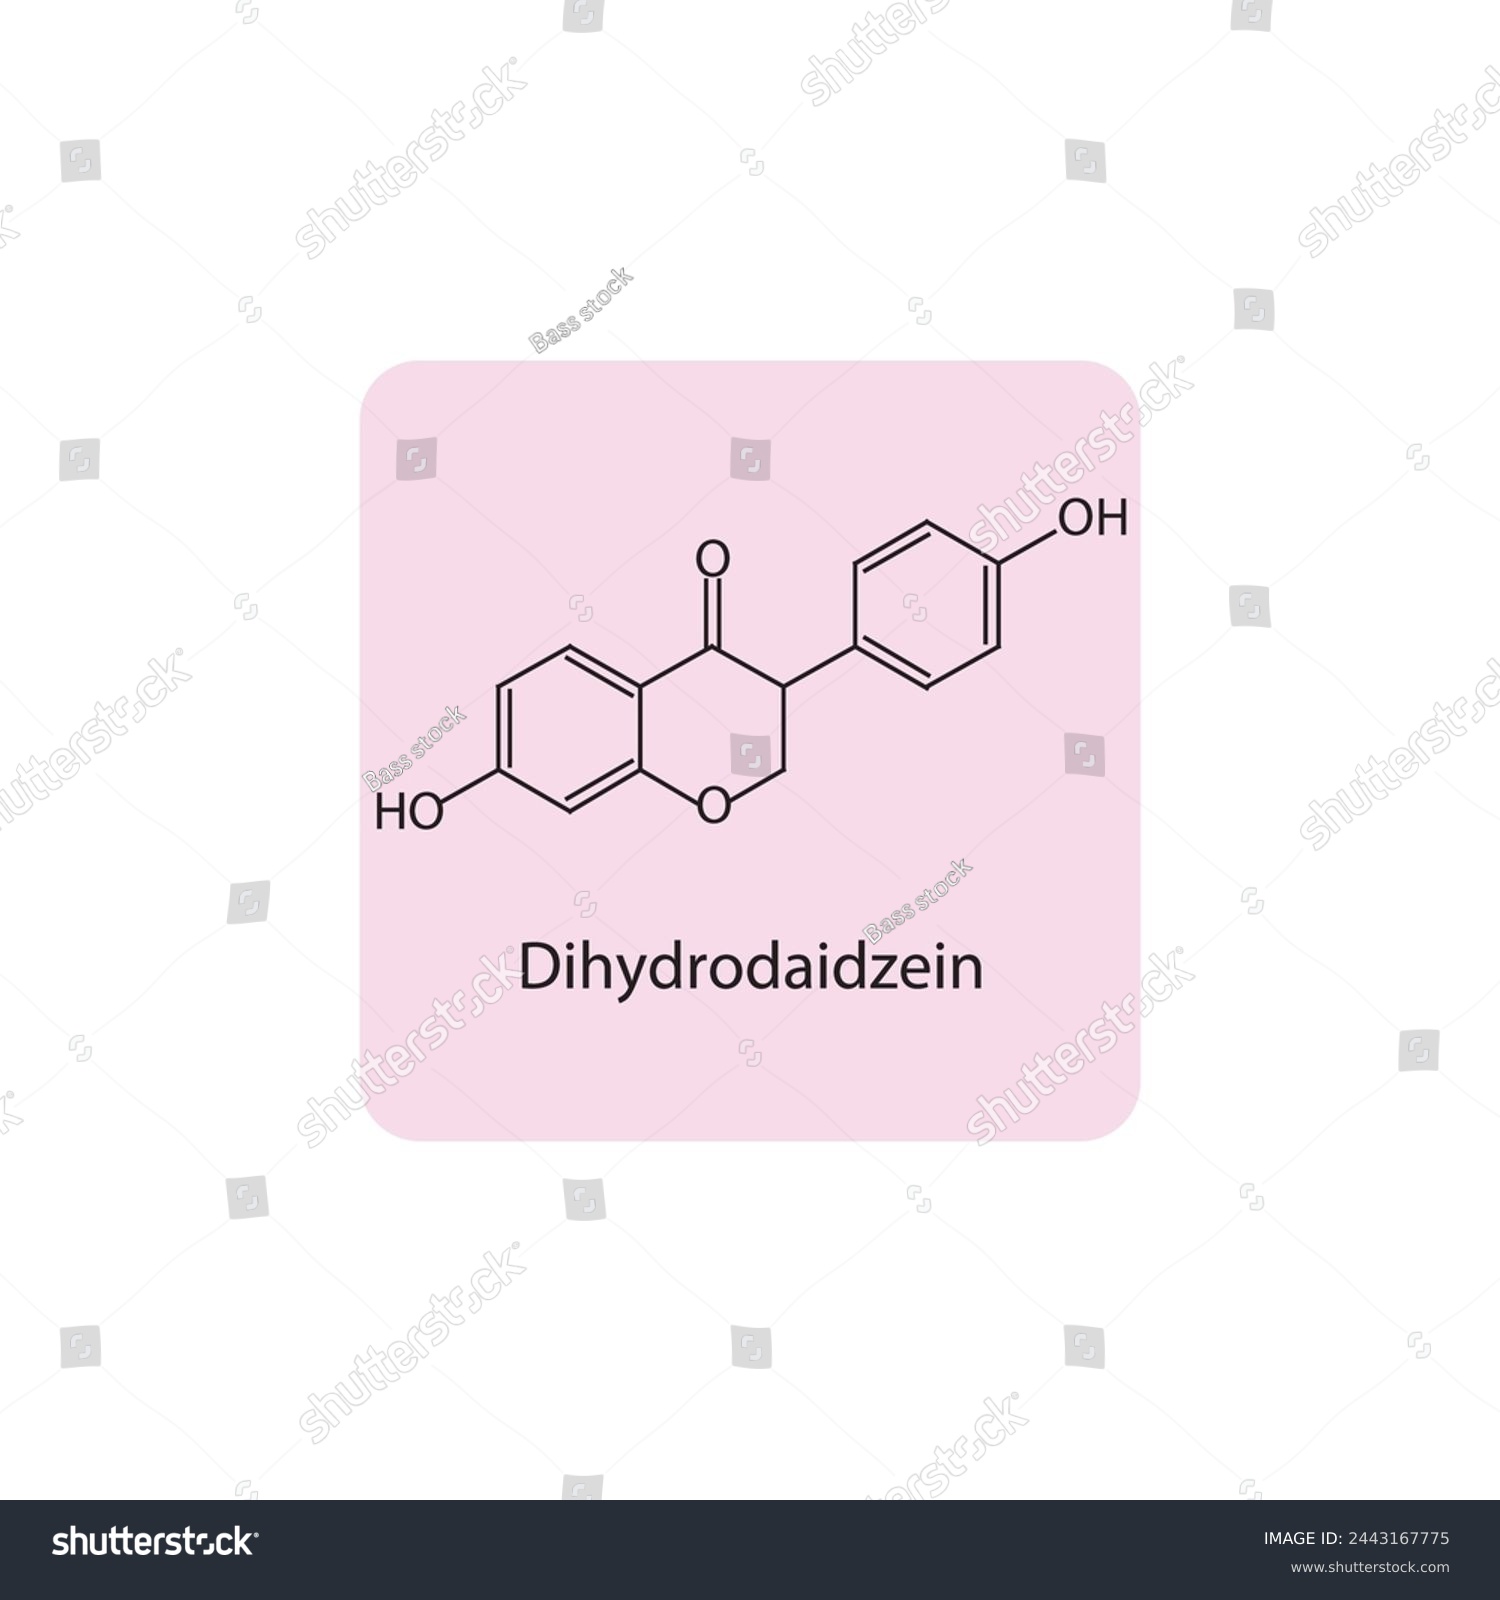 SVG of Dihydrodaidzein skeletal structure diagram.Isoflavanone compound molecule scientific illustration on pink background. svg